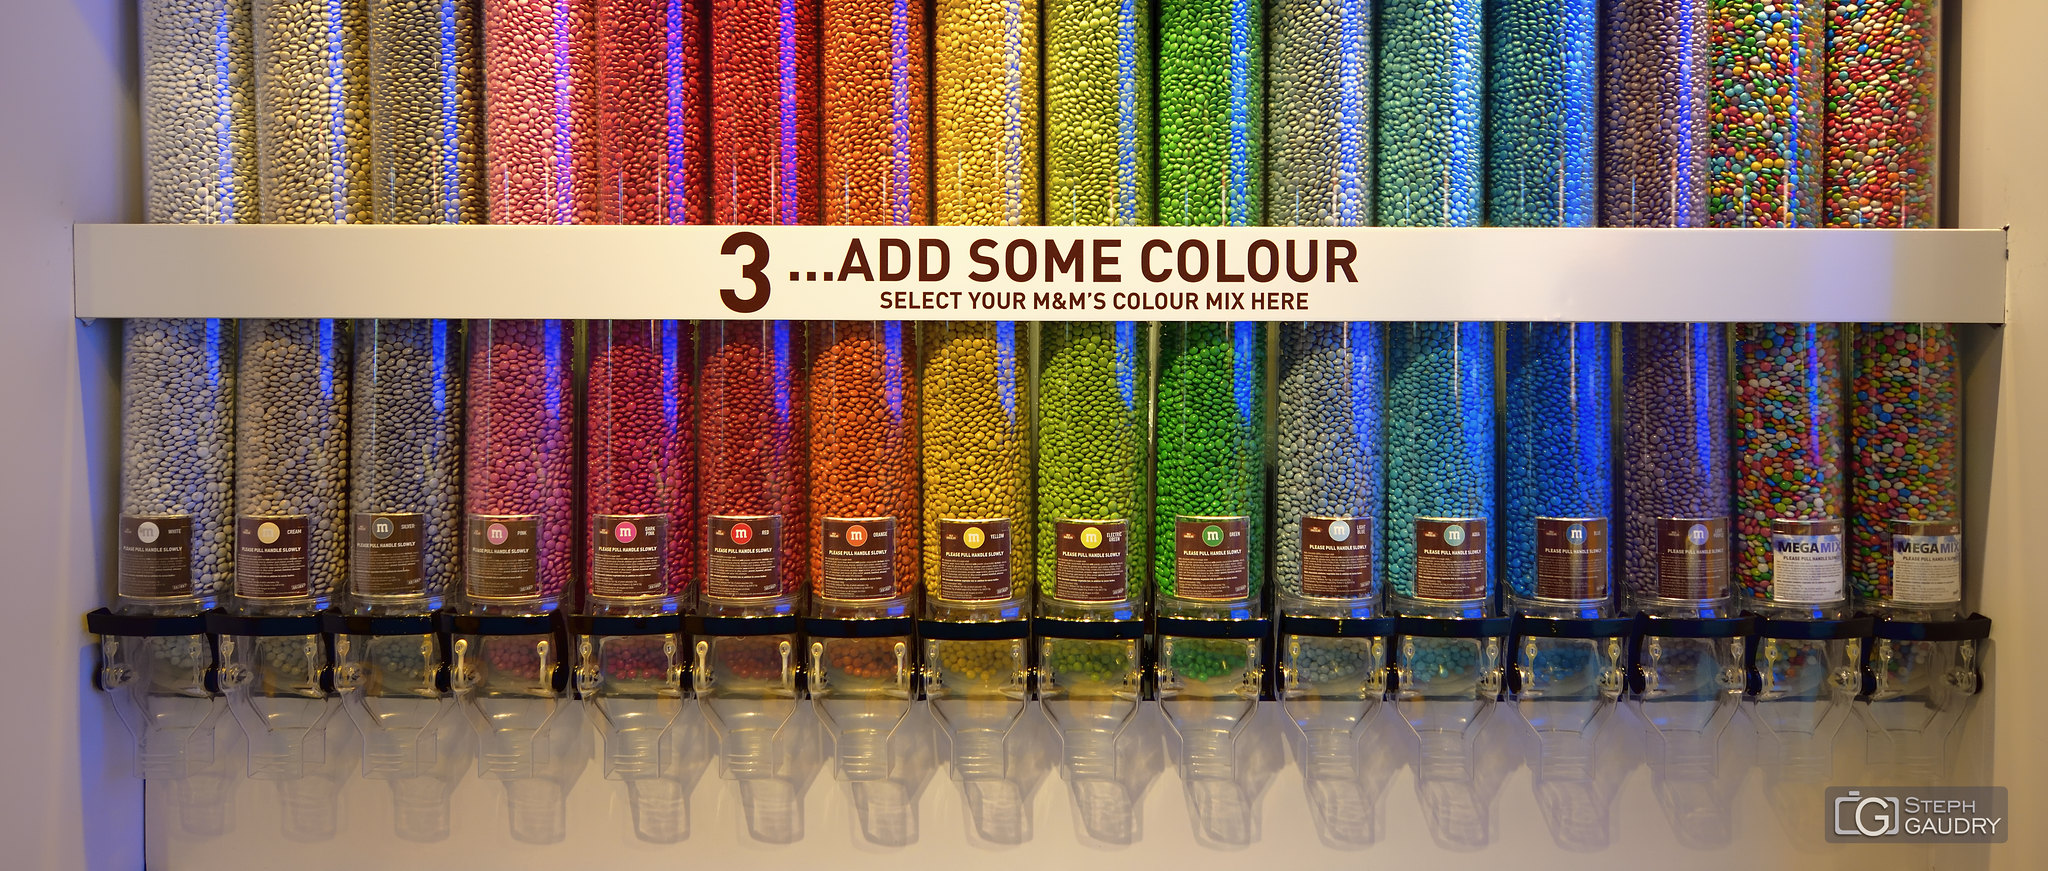 Add some colour with M&M's colour mix [Klik om de diavoorstelling te starten]